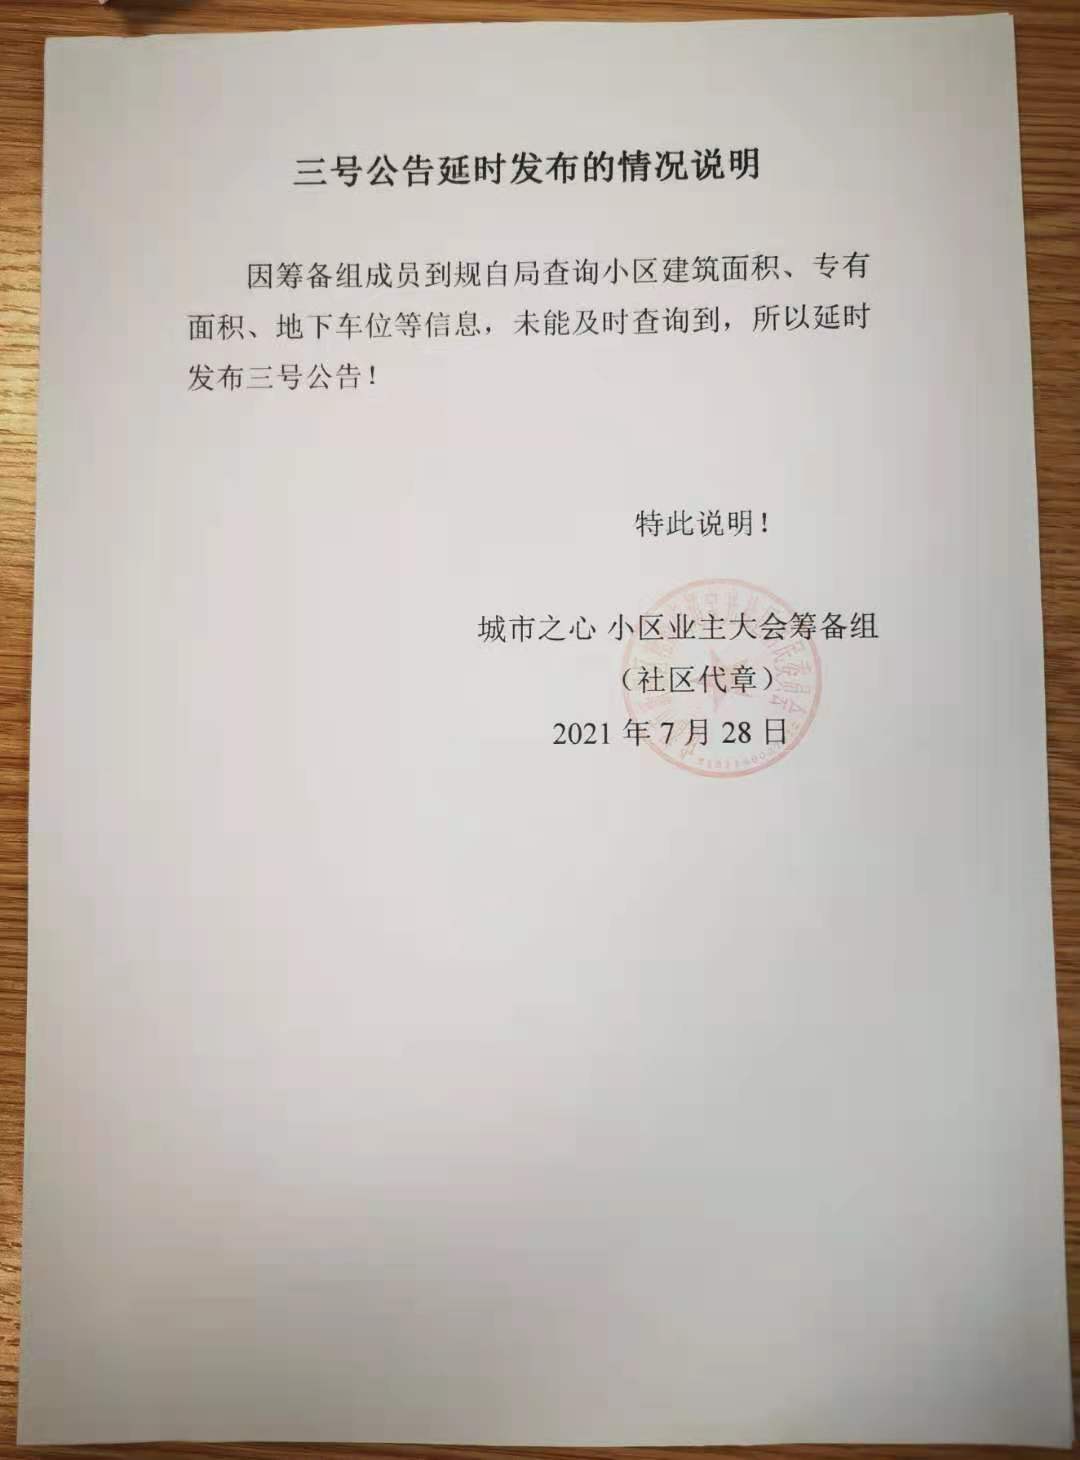 【业委会】2021.7.27宝光社区通知《三号公告延期说明》 新都区业主委员会-第2张